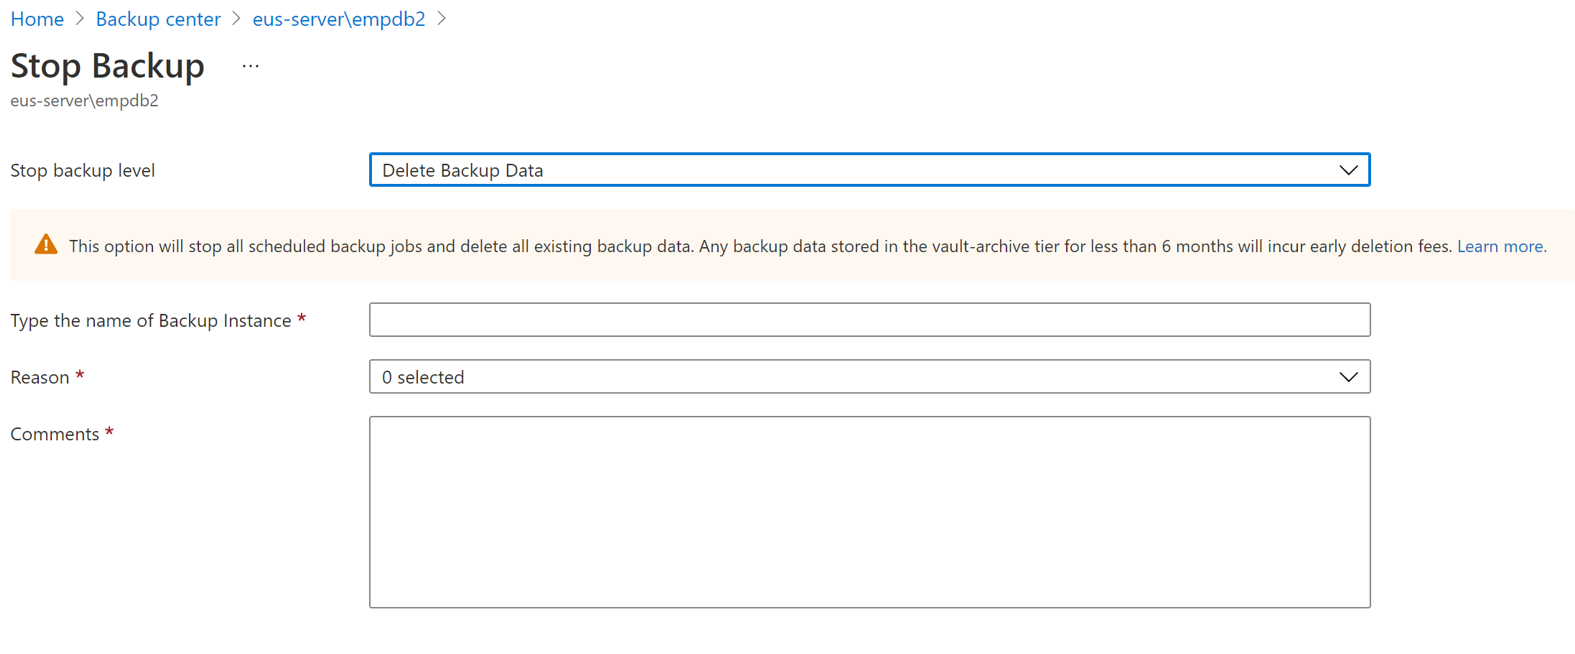 Captura de pantalla que muestra la opción de eliminar los datos de copia de seguridad y los detalles necesarios para agregarse.